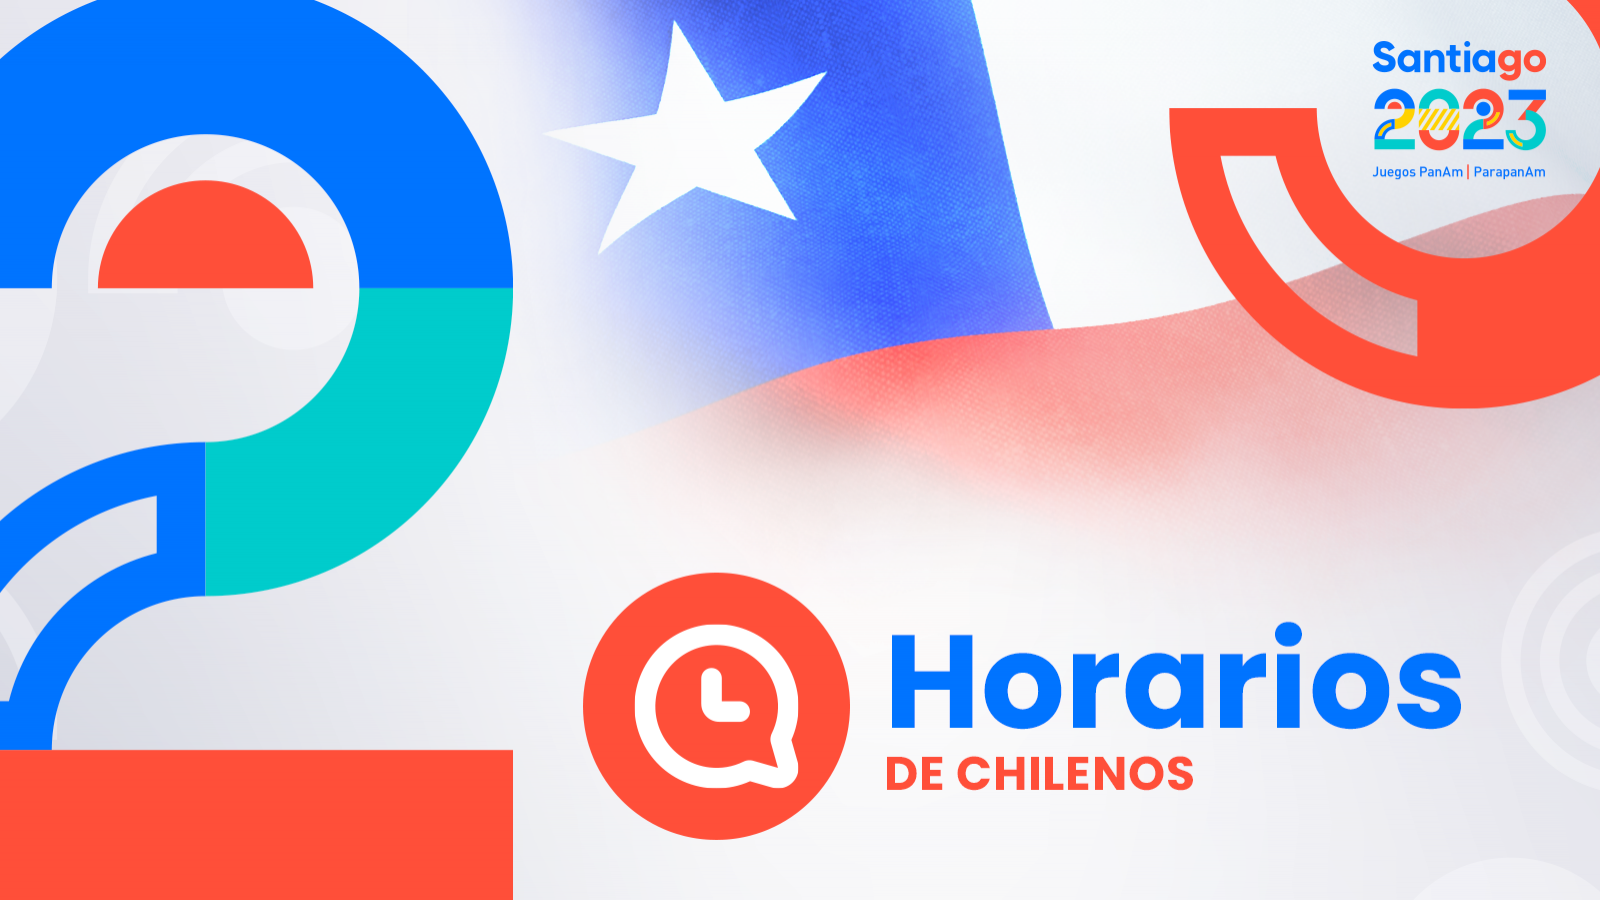 HORARIOS de chilenos en Santiago 2023: domingo 5 de noviembre